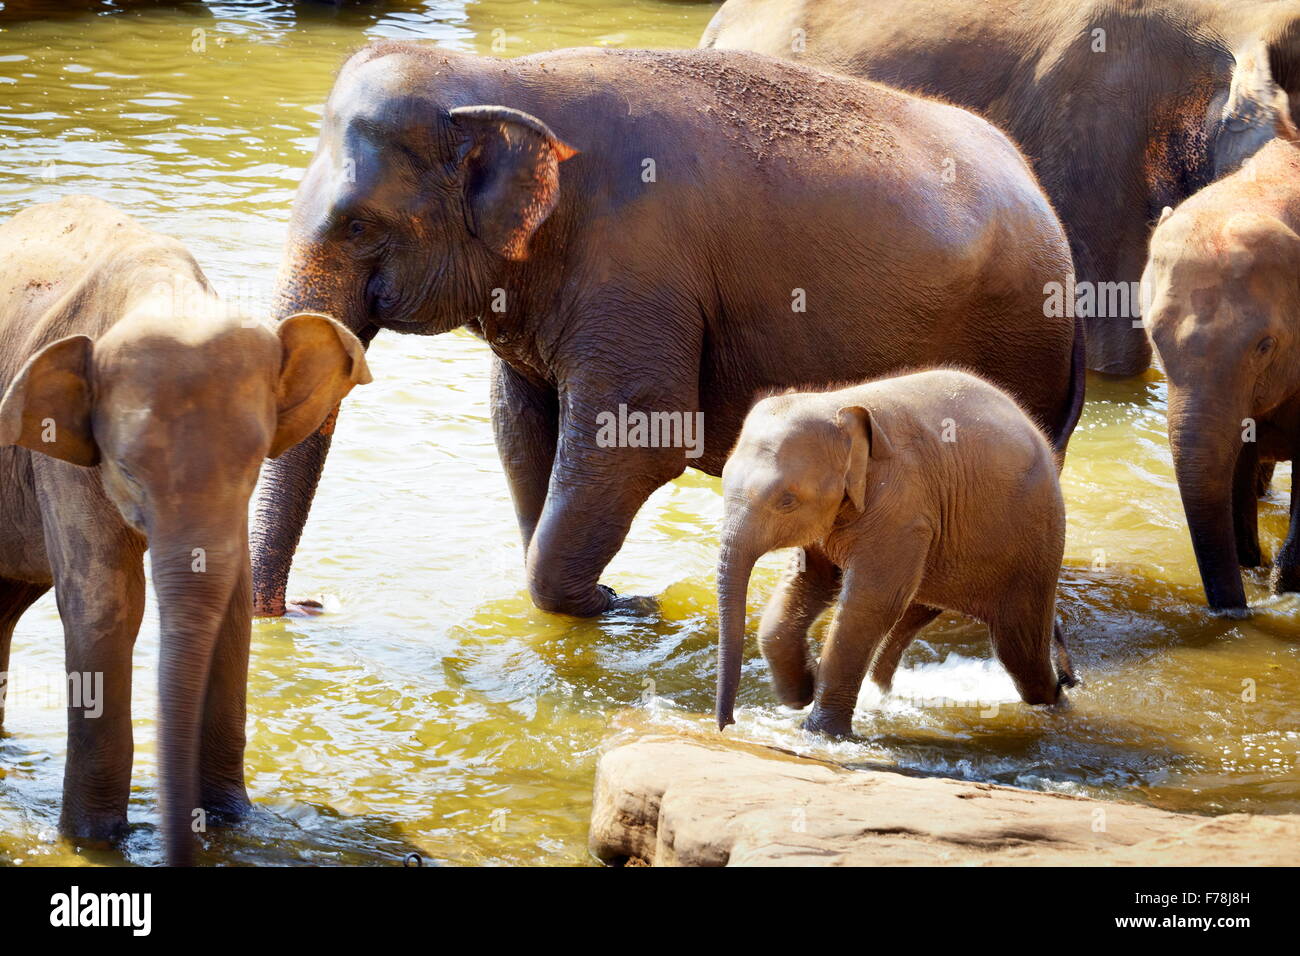 Sri Lanka - elefanti in bagno - Orfanotrofio degli Elefanti di Pinnawela per wild elefanti asiatici Foto Stock